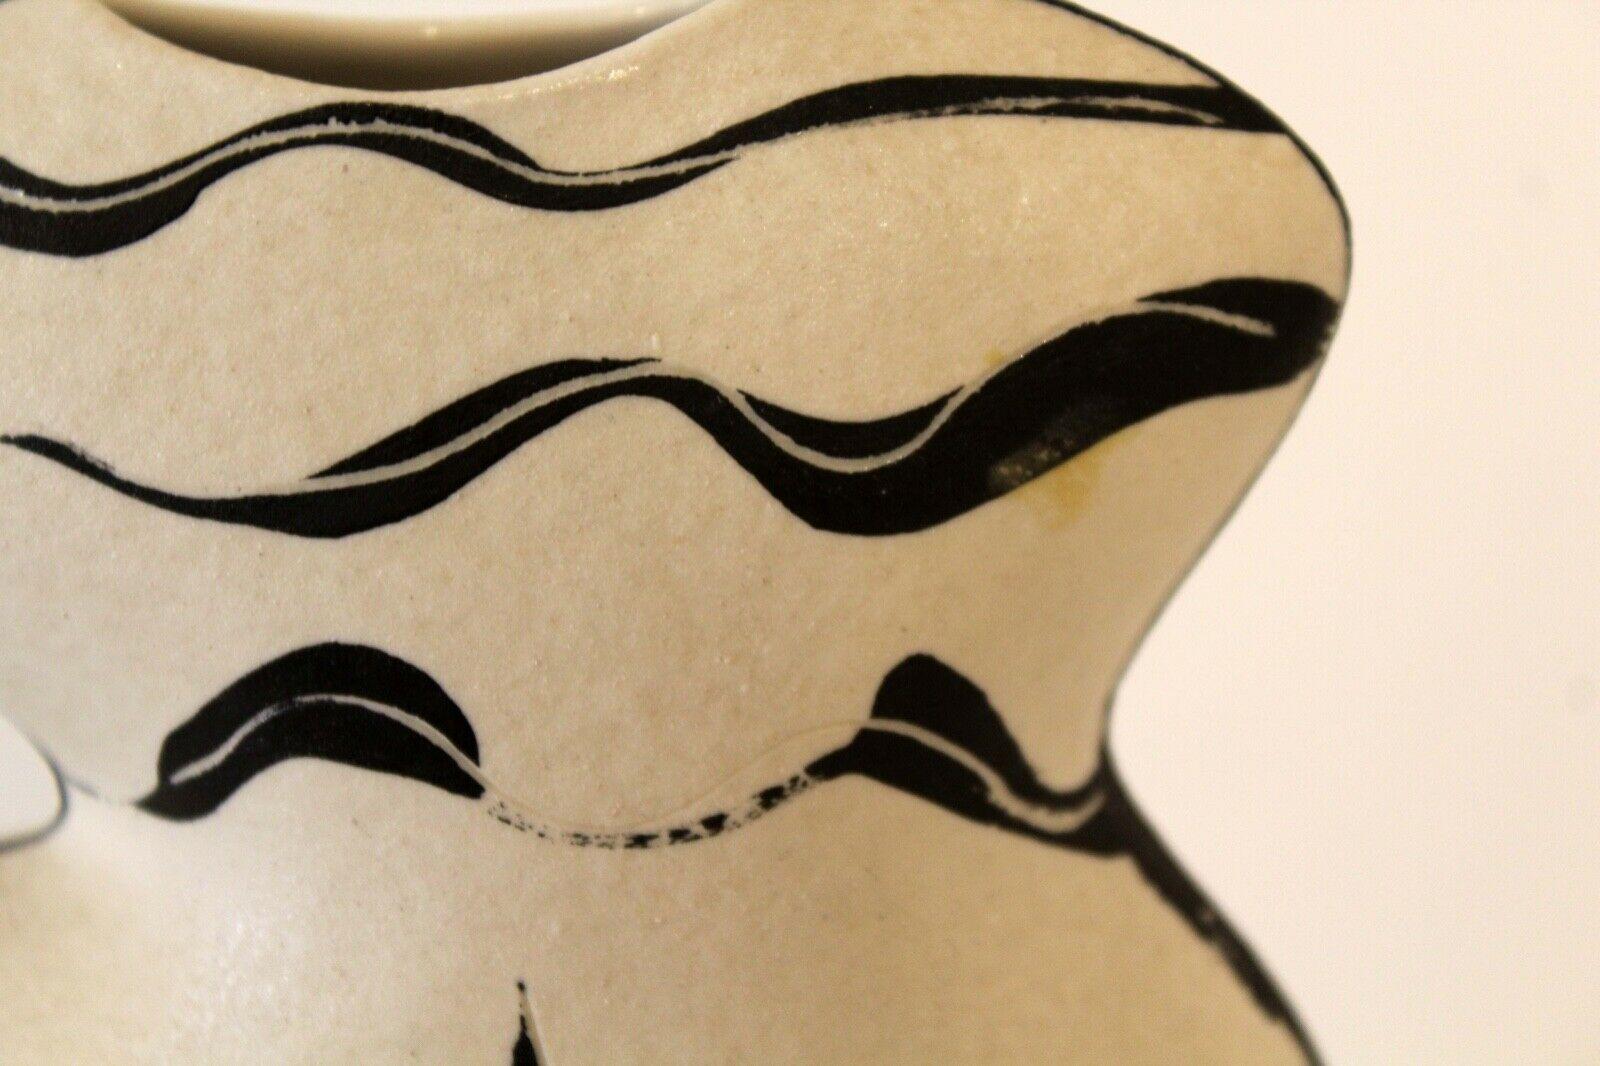 Polseno Nude Figurative Vase, Signed 1